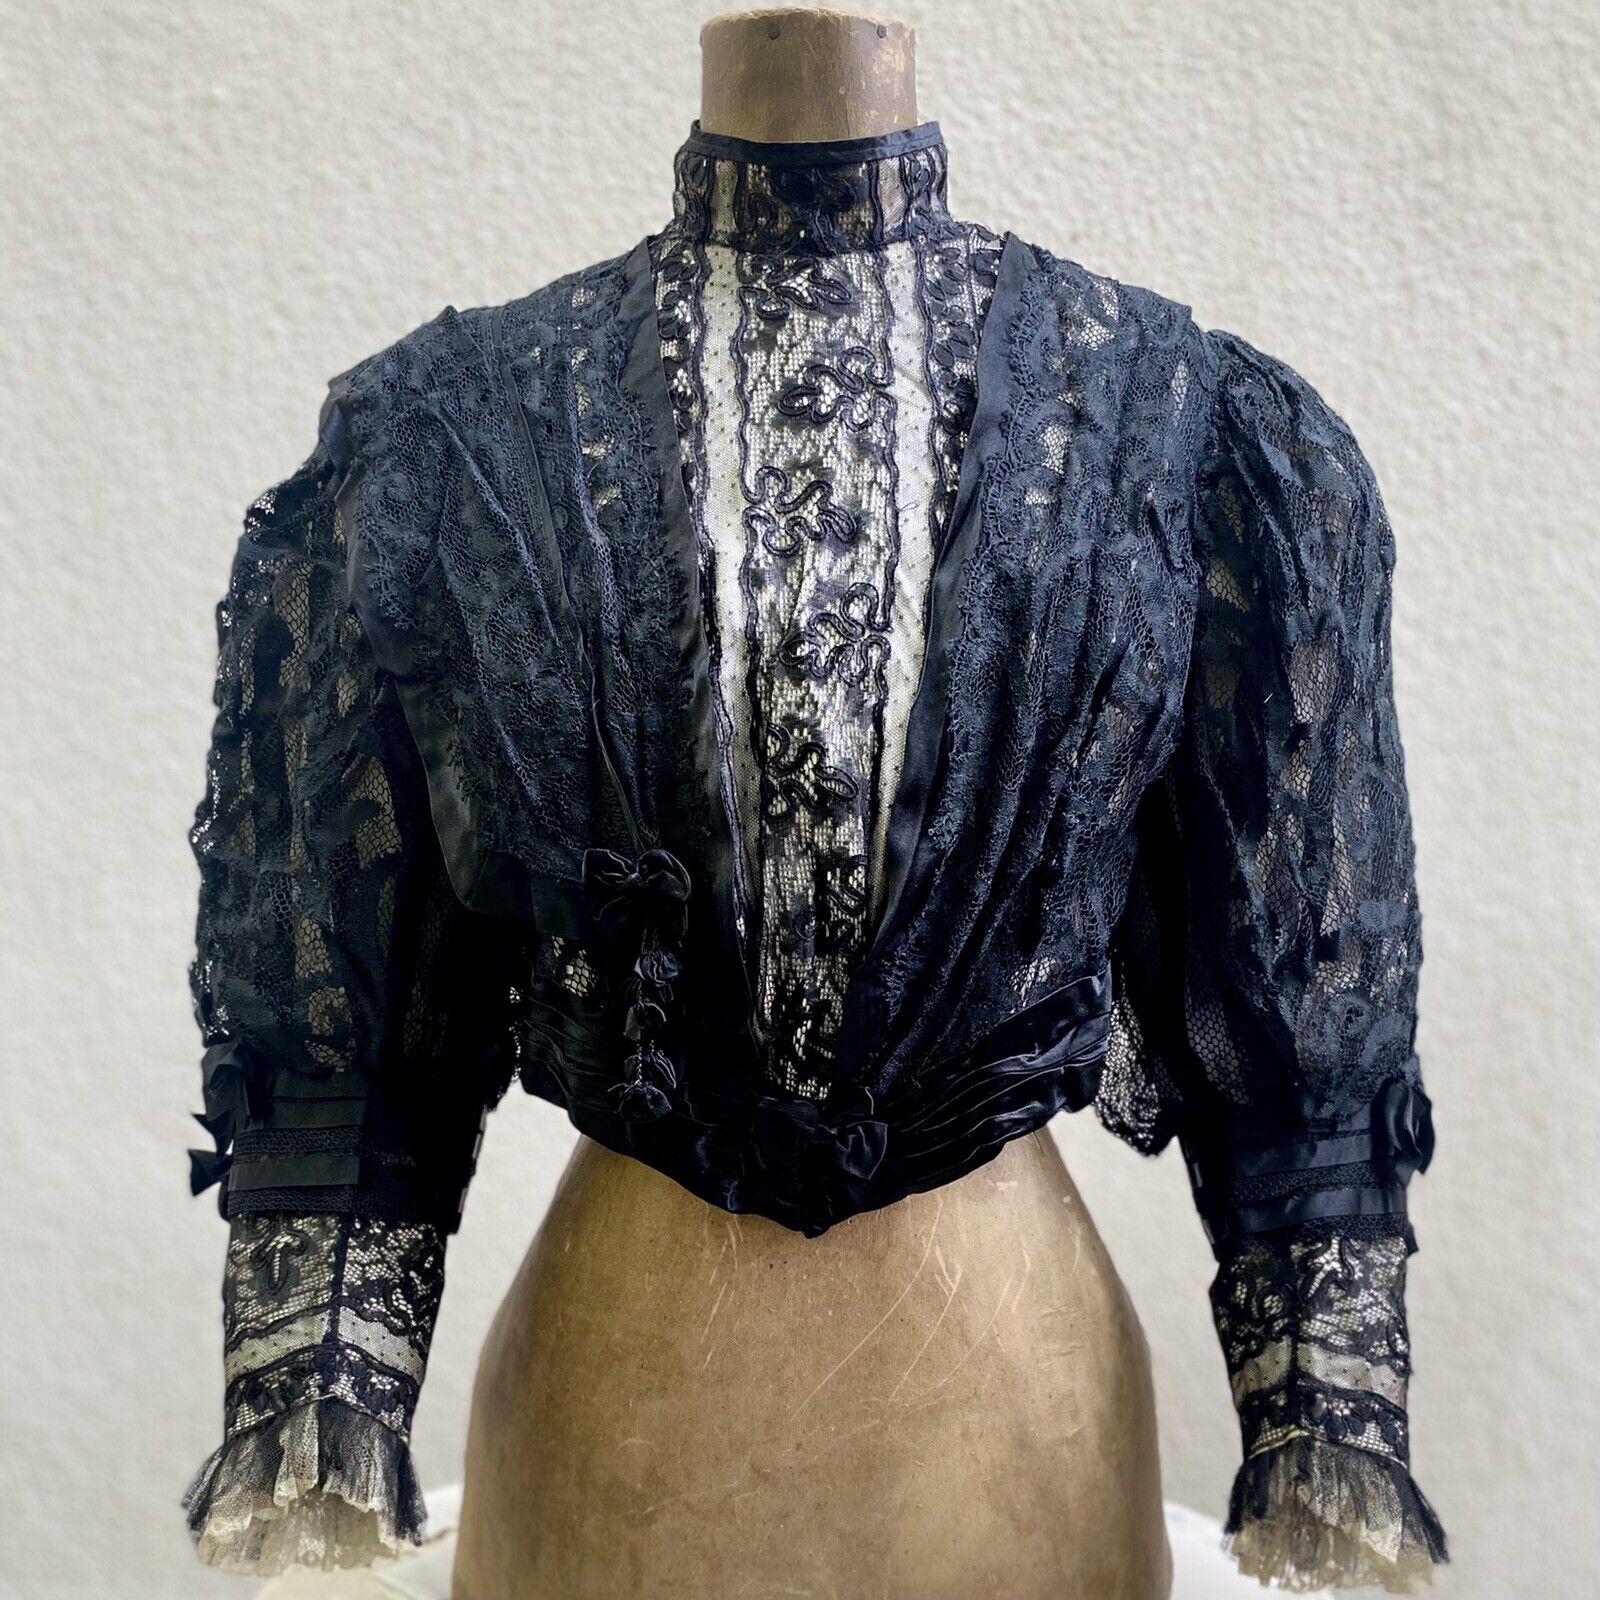 Antique Victorian Edwardian 1890s 1900s Black Lace & Bows Bodice Top Jacket S/M